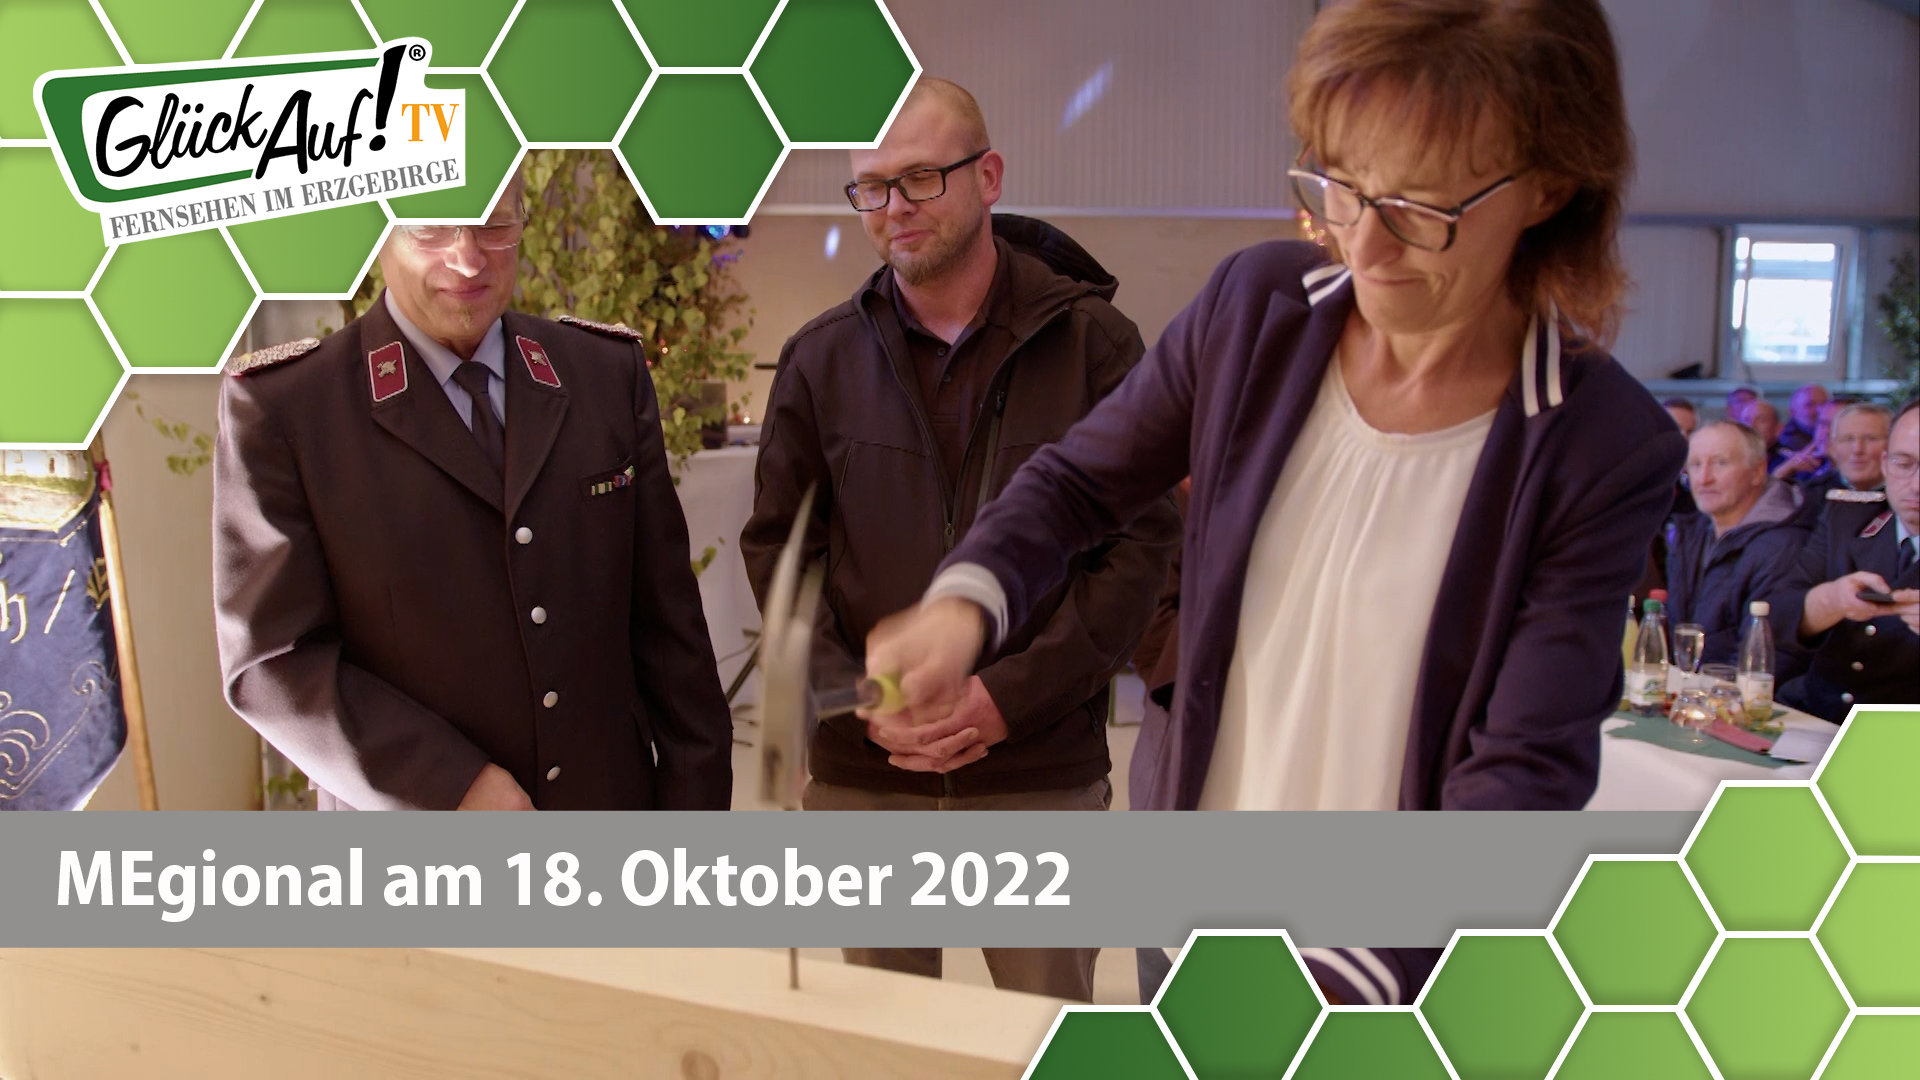 MEgional am 18. Oktober 2022 - mit dem Richtfest beim Feuerwehrgerätehaus in Lauterbach